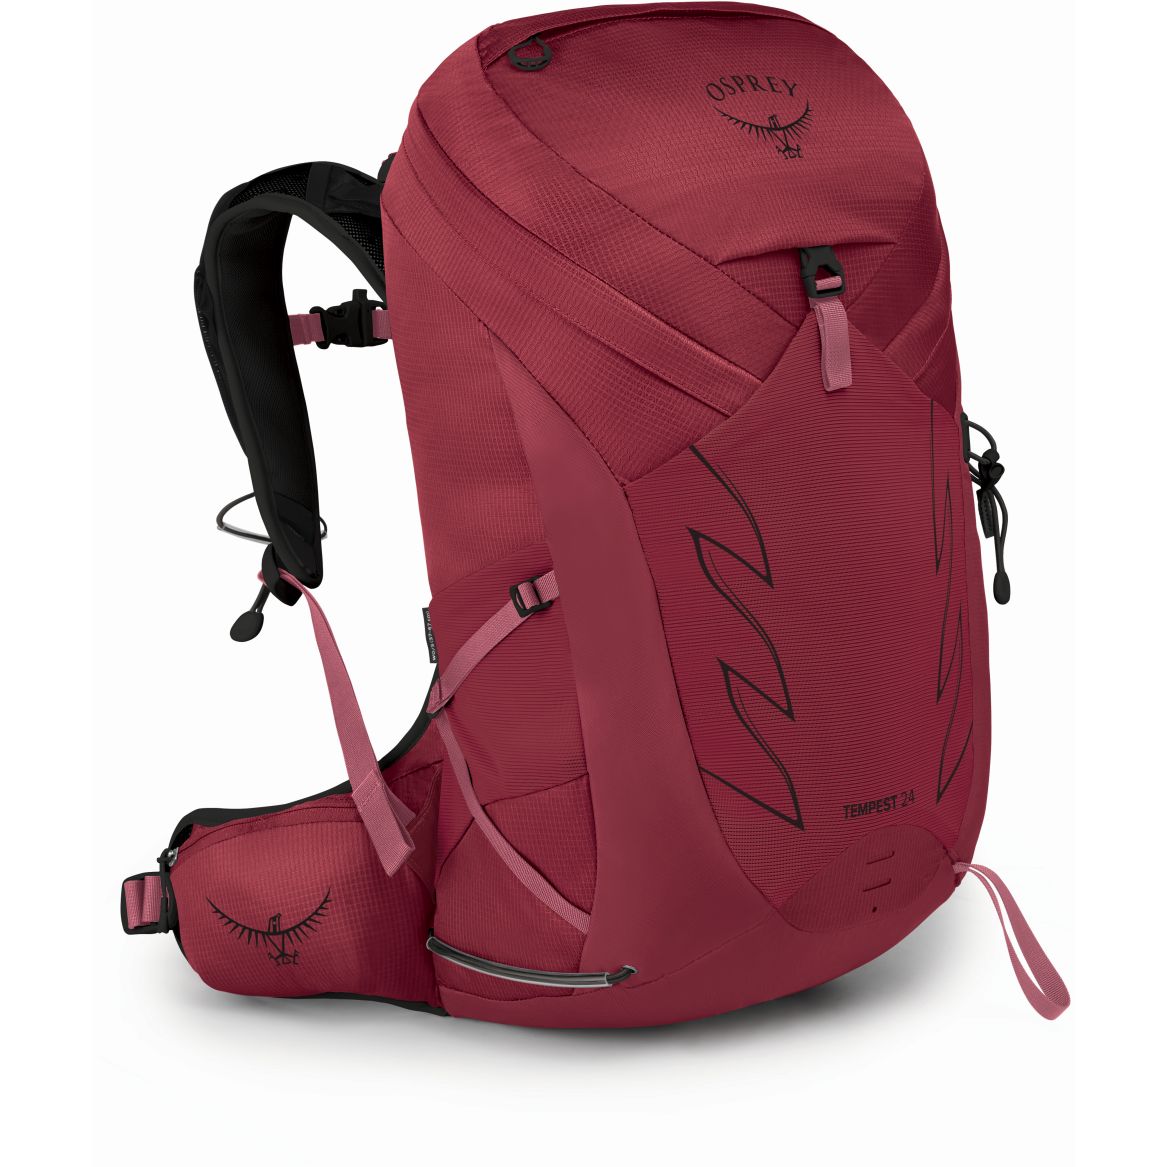 Produktbild von Osprey Tempest 24 Rucksack Damen - Kakio Pink - XS/S